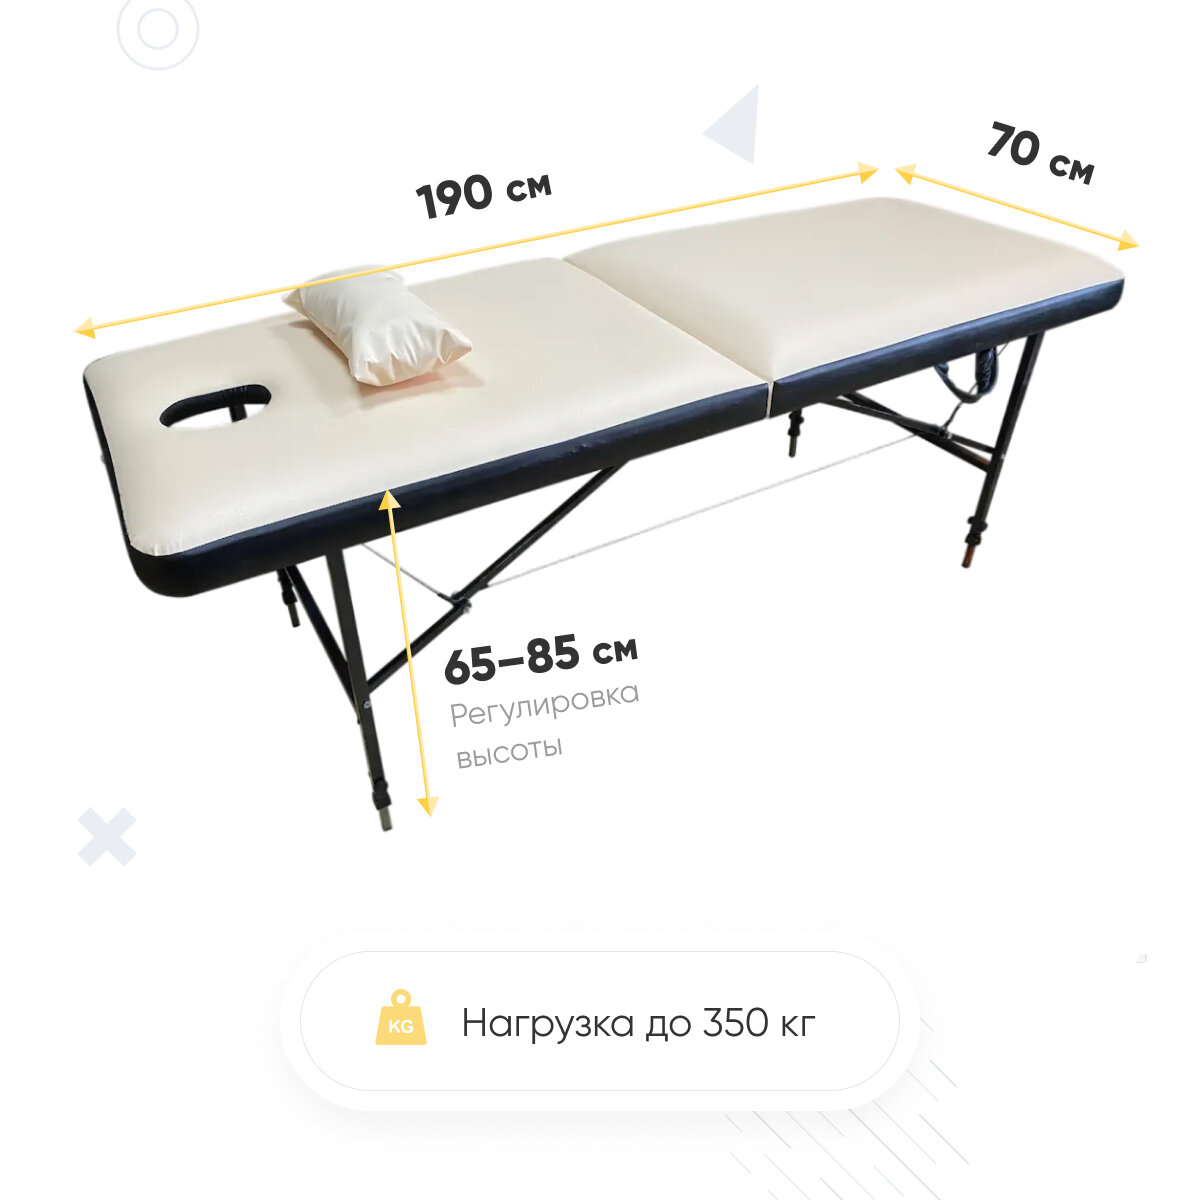 Массажный стол складной 190х70 см и Регулировкой высоты 65-85 Бежево-черный. Двойной поролон, Двойной цвет Fabric-stol - фотография № 2